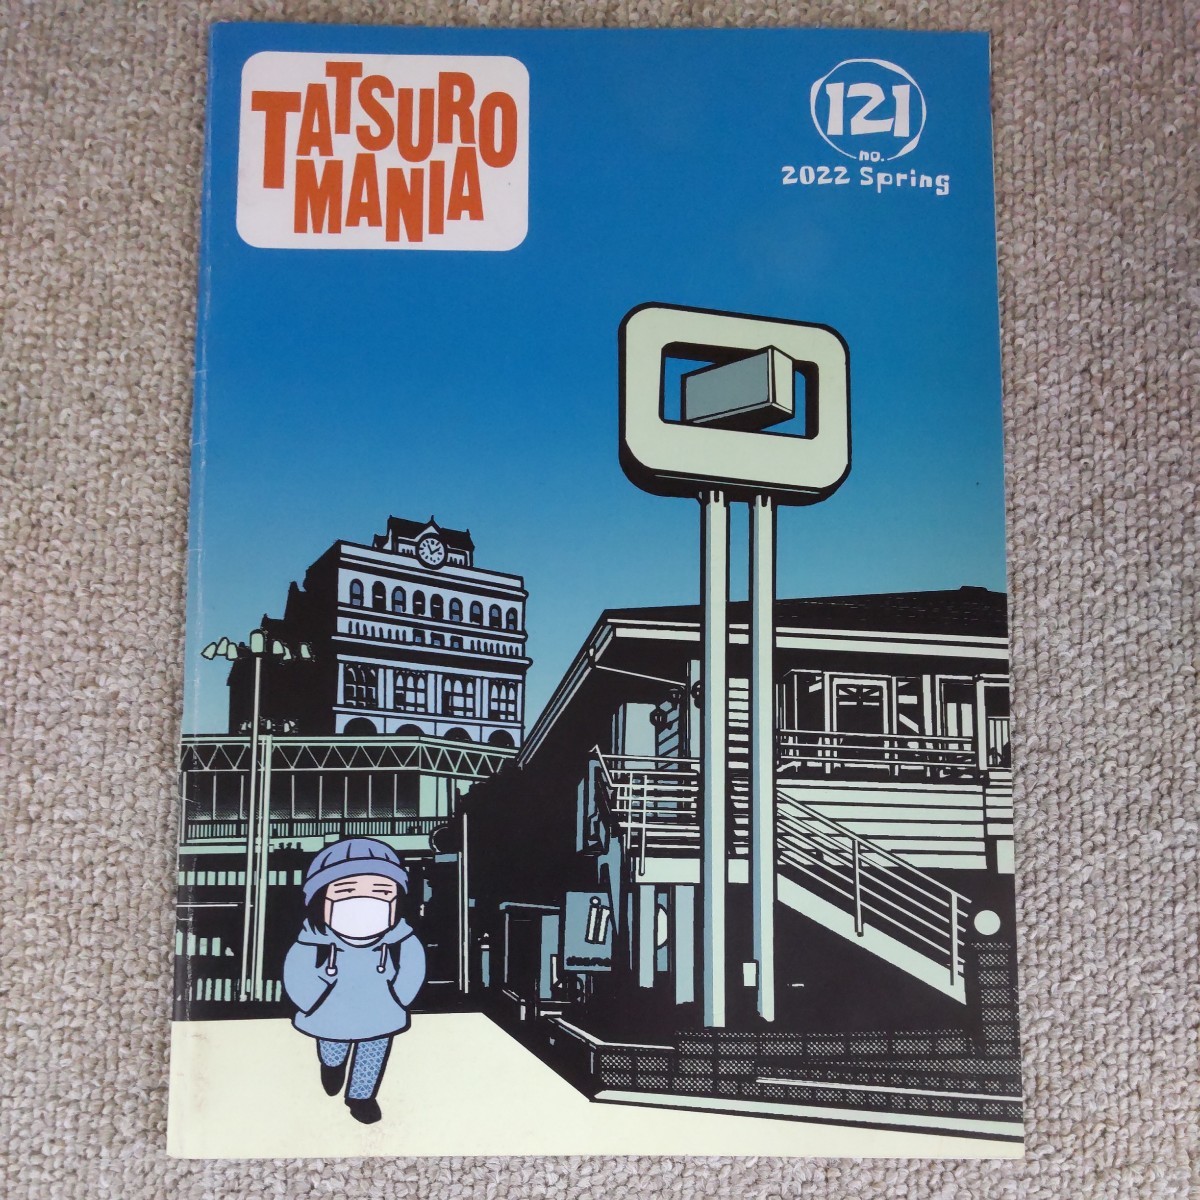  Yamashita Tatsuro TATSURO MANIA fan club bulletin tatsu low mania No 119 120 121 3 pcs. set 2021 2022 secondhand book 